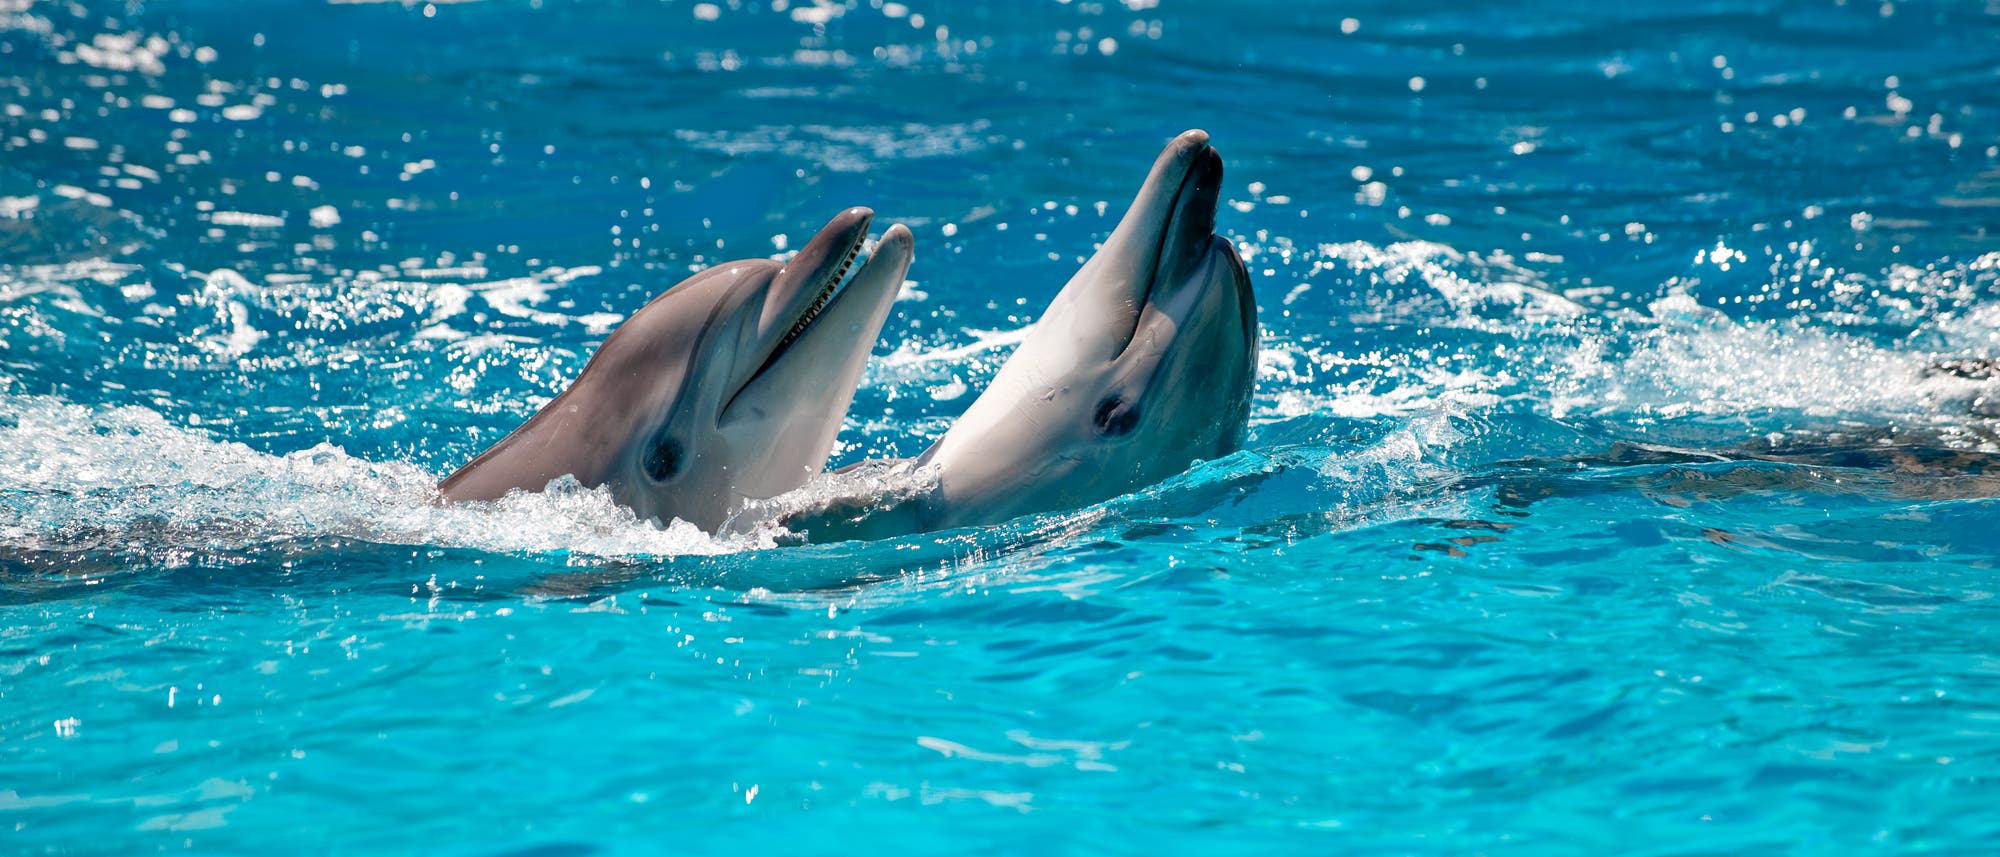 Zwei Delfine schwimmen im türkisblauen Wasser.